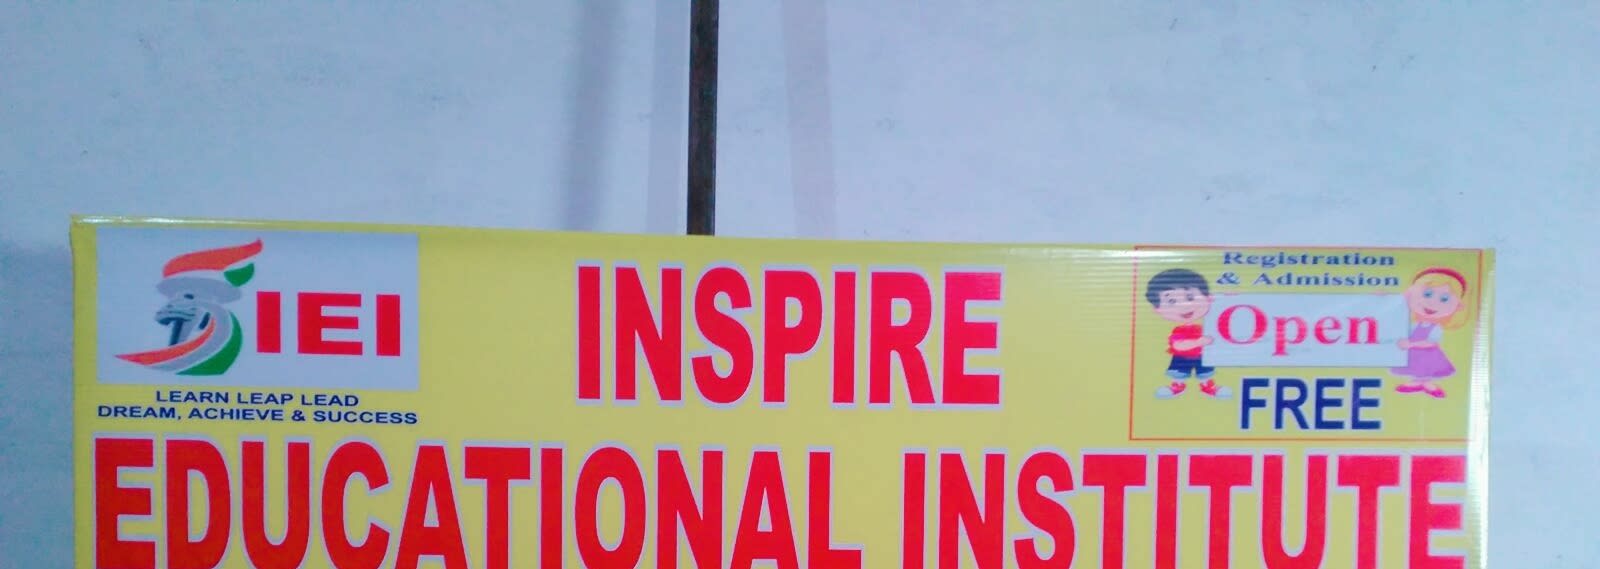 Inspire Educational Institute